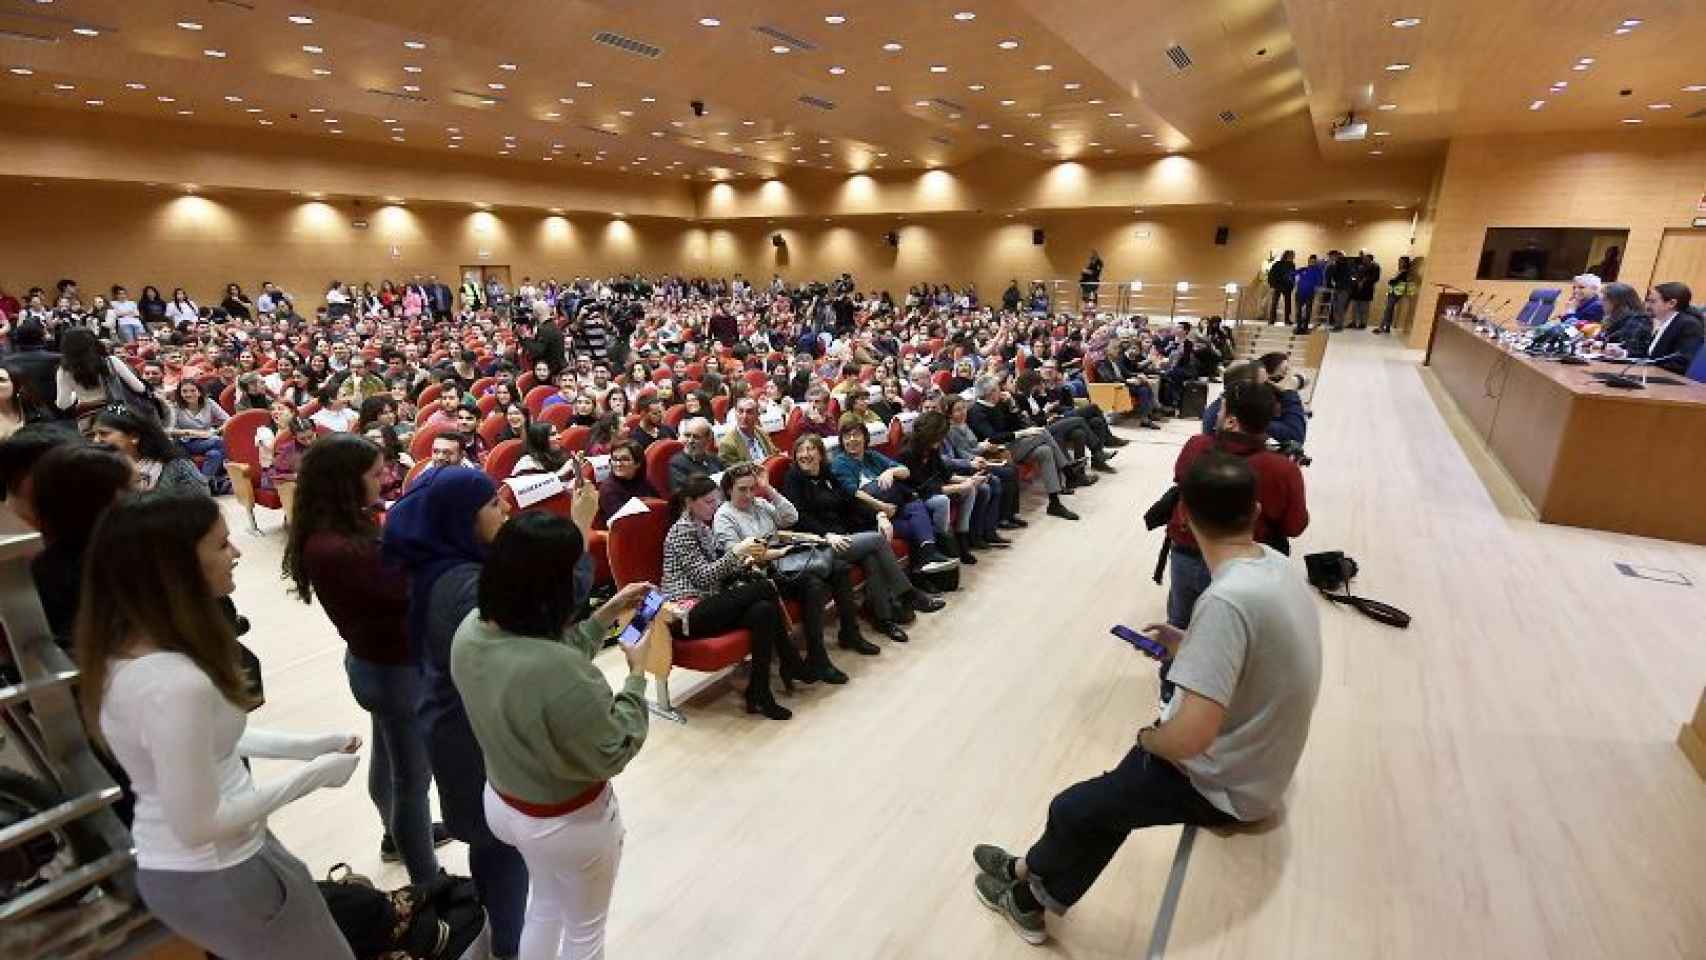 El salón de actos de la Facultad de Ciencia Política y Sociología de la UCM, lleno para escuchar a Pablo Iglesias.